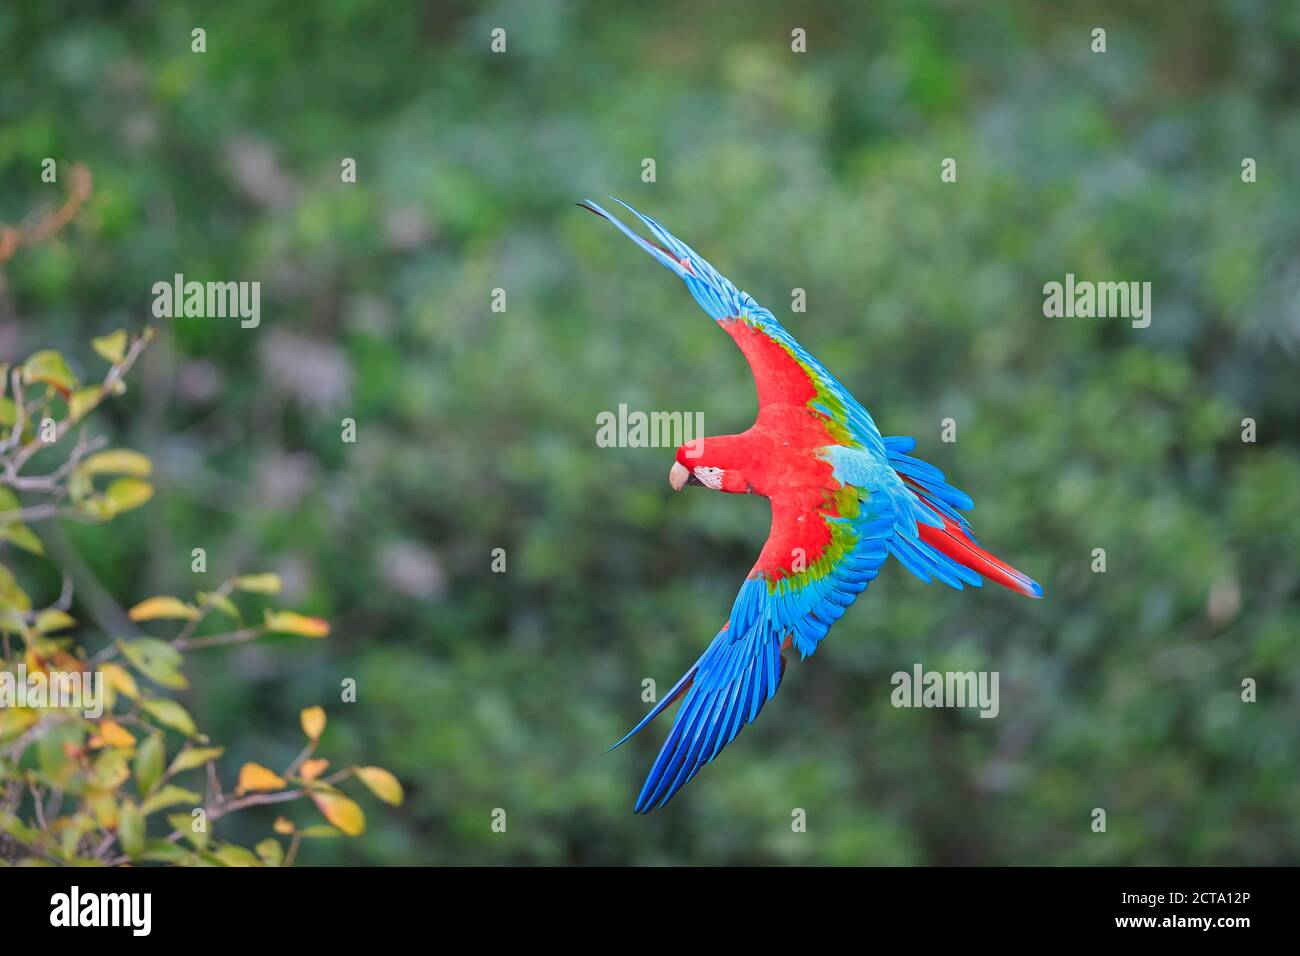 Brazil, Mato Grosso, Mato Grosso do Sul, Bonito, Buraco of Araras, flying scarlet macaw Stock Photo